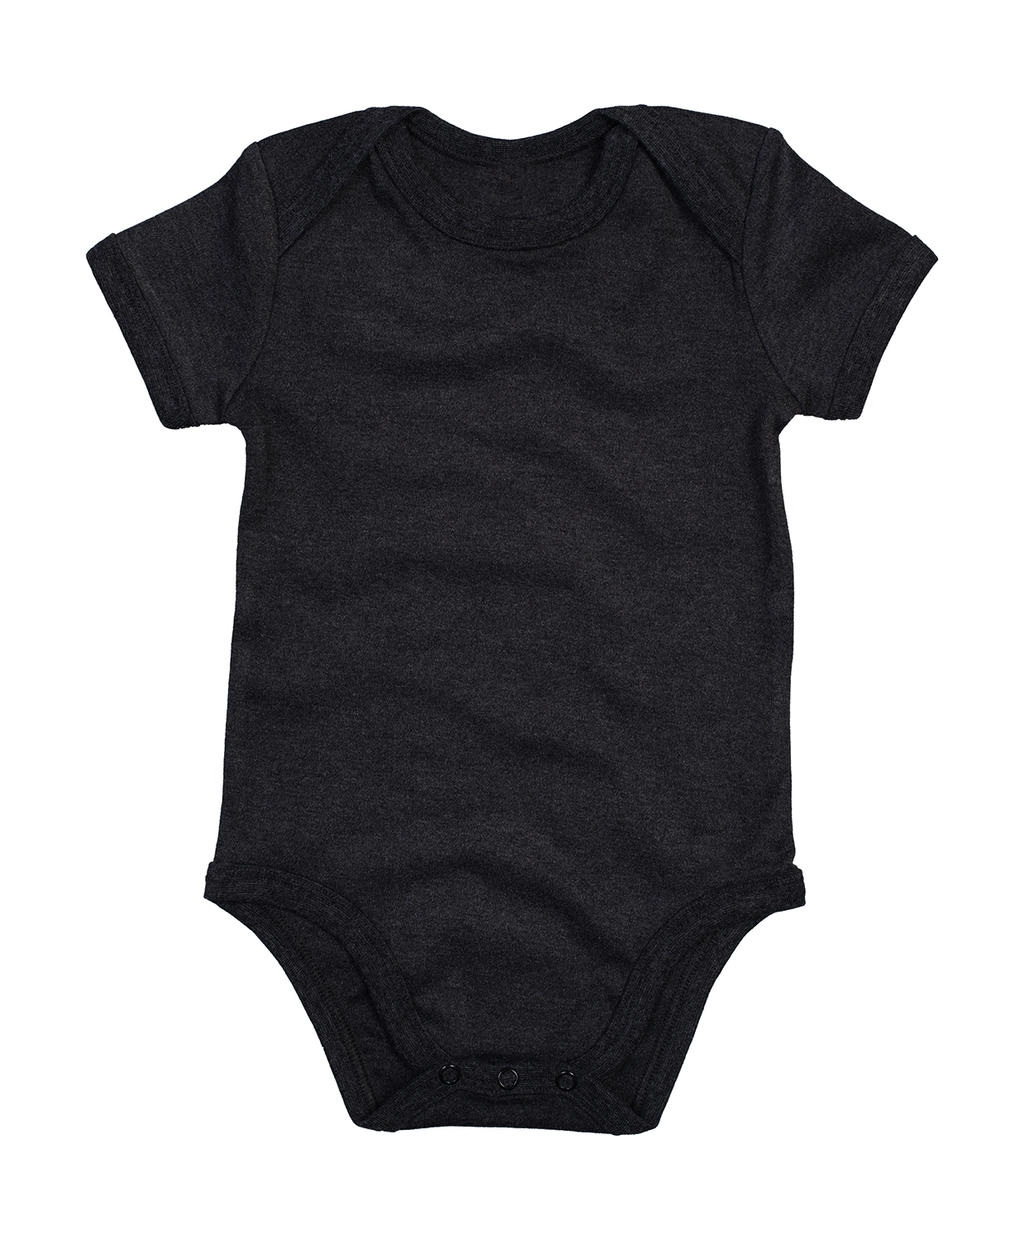 Baby Bodysuit zum Besticken und Bedrucken in der Farbe Charcoal Grey Melange Organic mit Ihren Logo, Schriftzug oder Motiv.